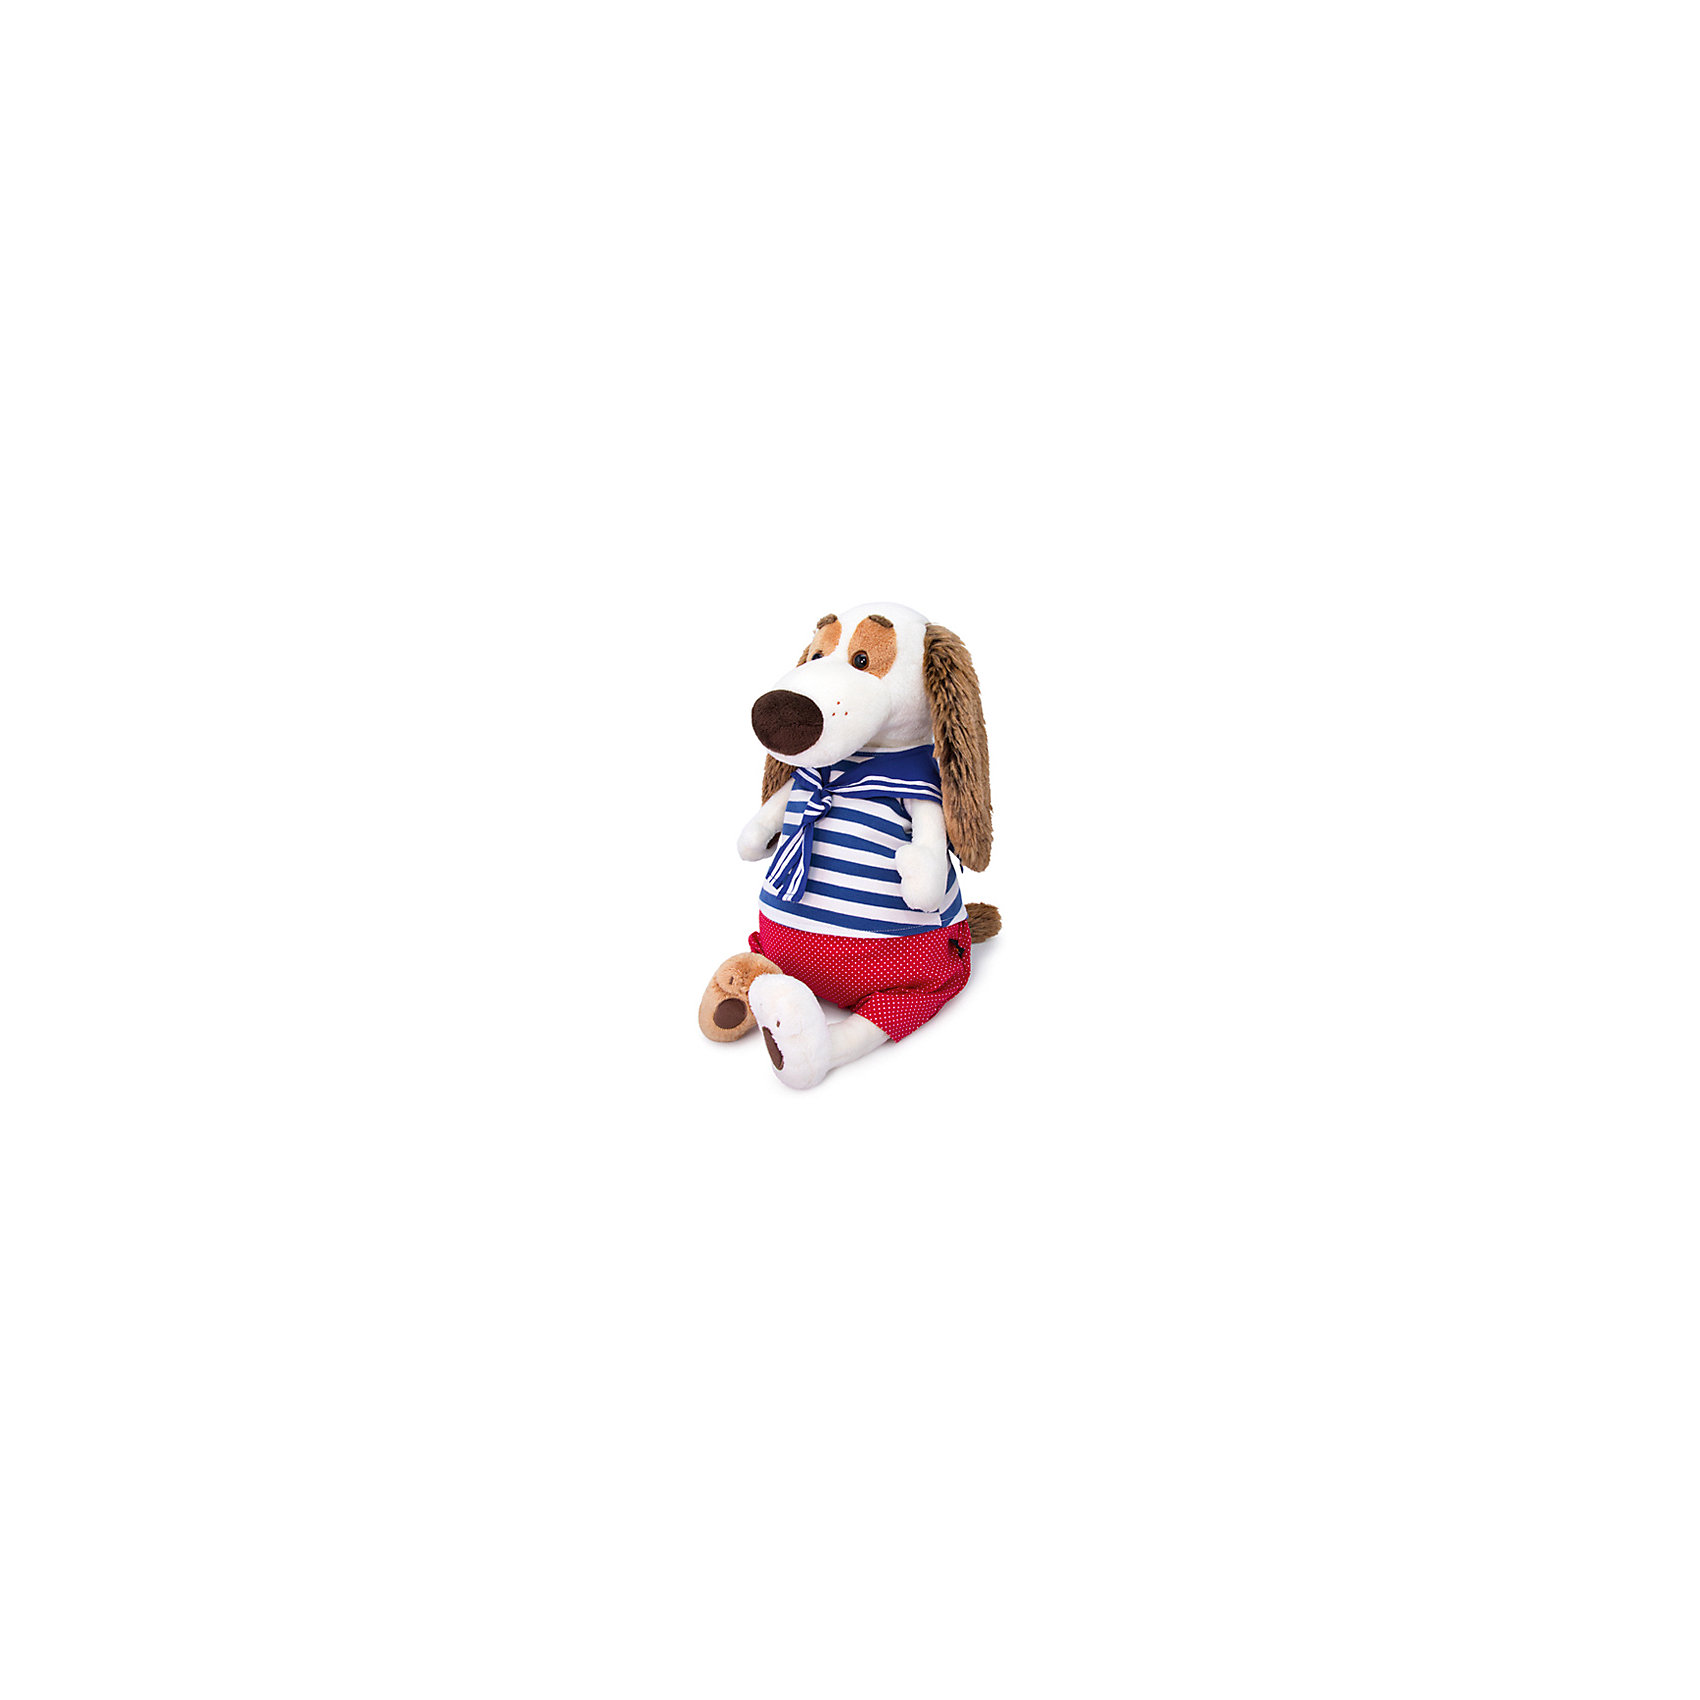 Мягкая игрушка Собака Бартоломей в морском костюме, 27см Budi Basa 12342594